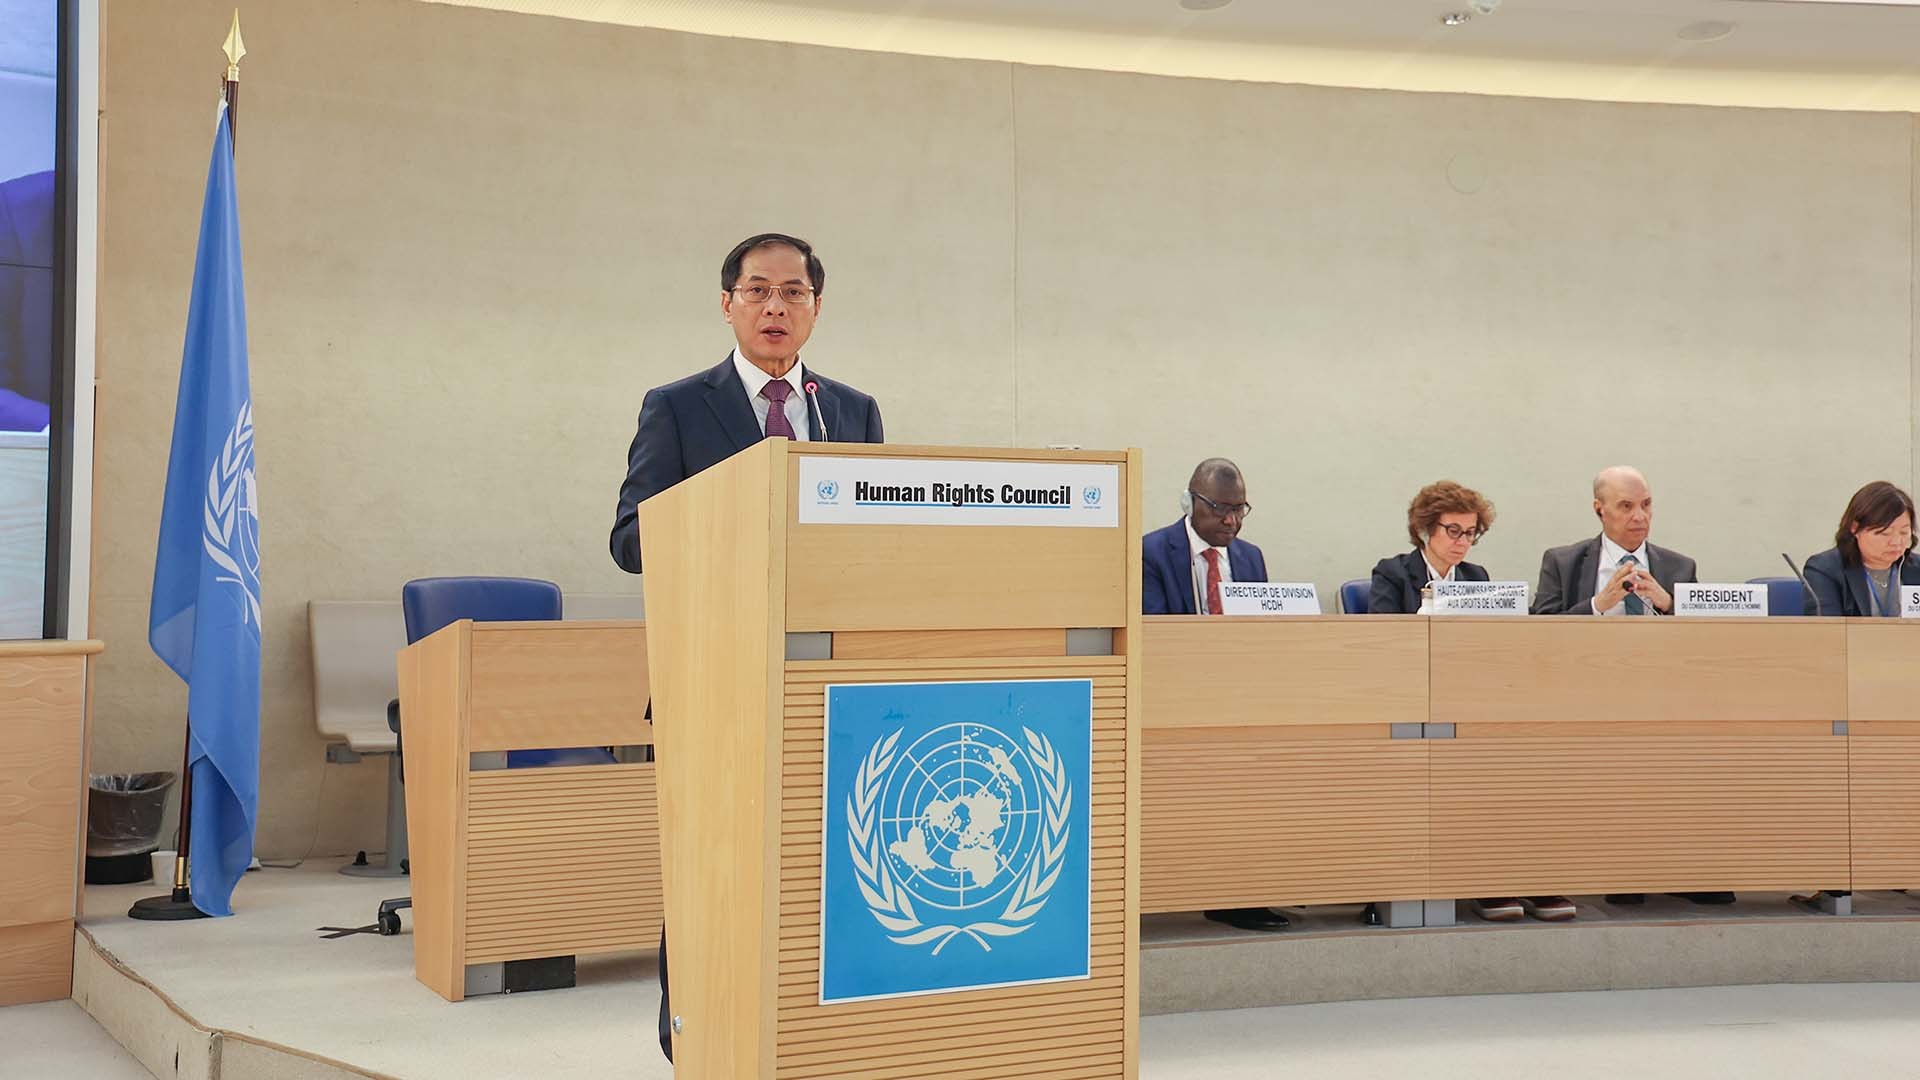 El Ministro Bui Thanh Son habló en la Reunión de Alto Nivel del 55º período de sesiones del Consejo de Derechos Humanos de las Naciones Unidas, el 26 de febrero en Ginebra, Suiza. (Foto: Nhat Phong)